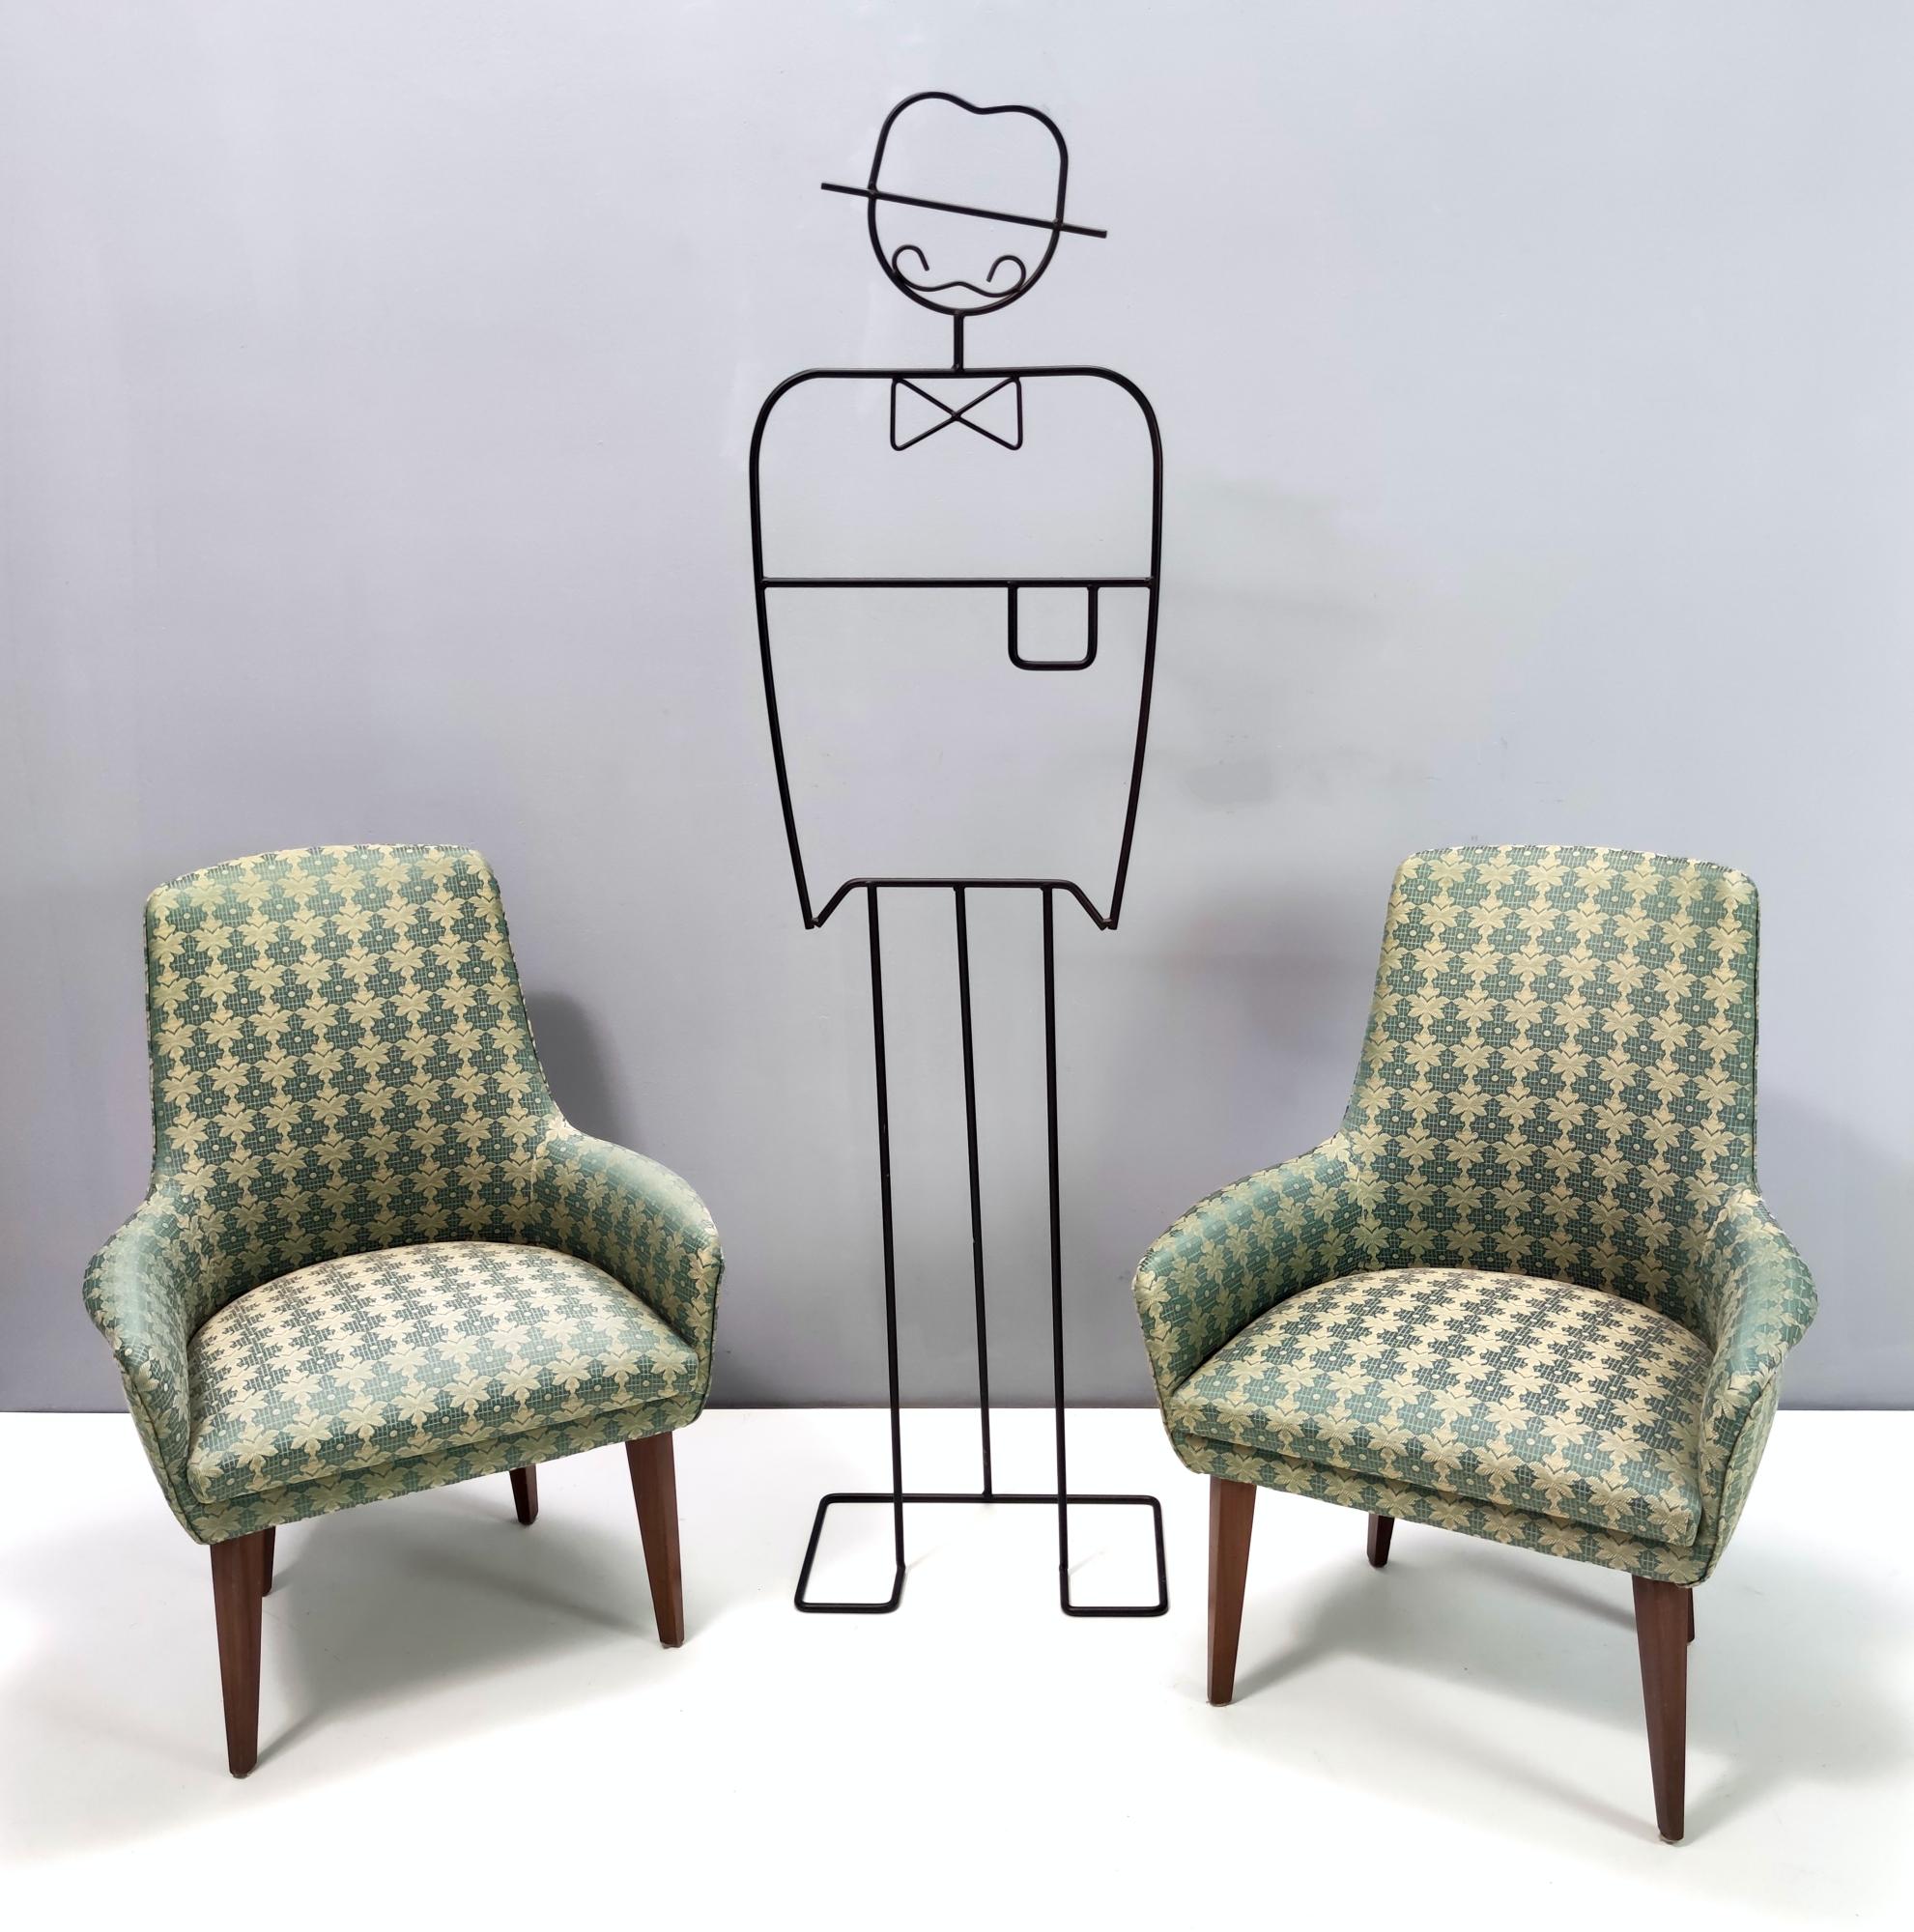 Fabriqué en Italie, années 1960.
Ces fauteuils sont dotés d'une structure en hêtre et d'un revêtement en tissu vert de haute qualité.
Ils peuvent présenter de légères traces d'utilisation puisqu'ils sont vintage, mais ils peuvent être considérés